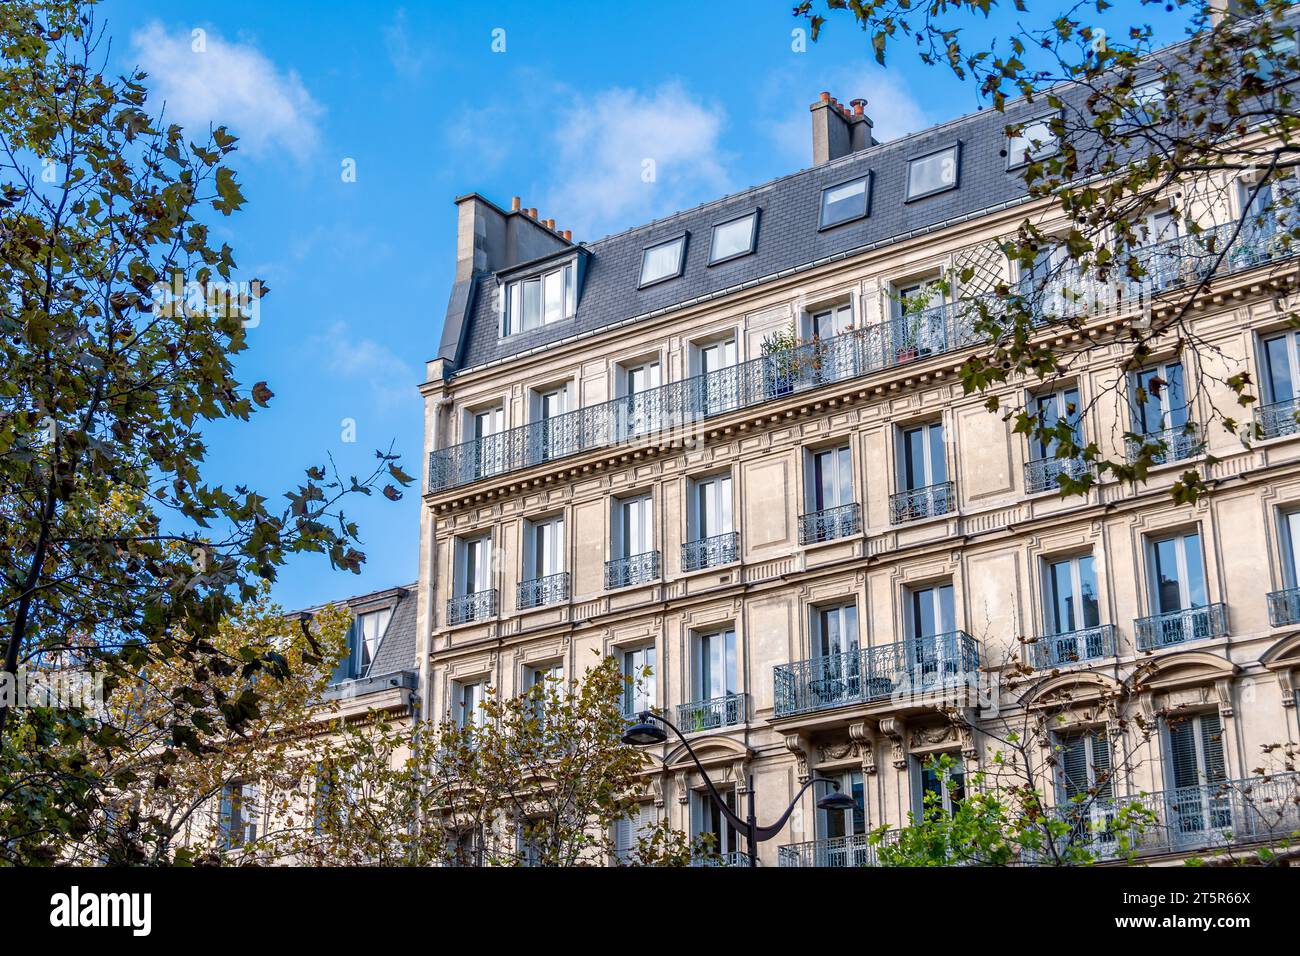 Facciata di un edificio residenziale in stile classico a Parigi situato su un viale alberato. Concetto di mercato immobiliare residenziale per vecchie abitazioni Foto Stock